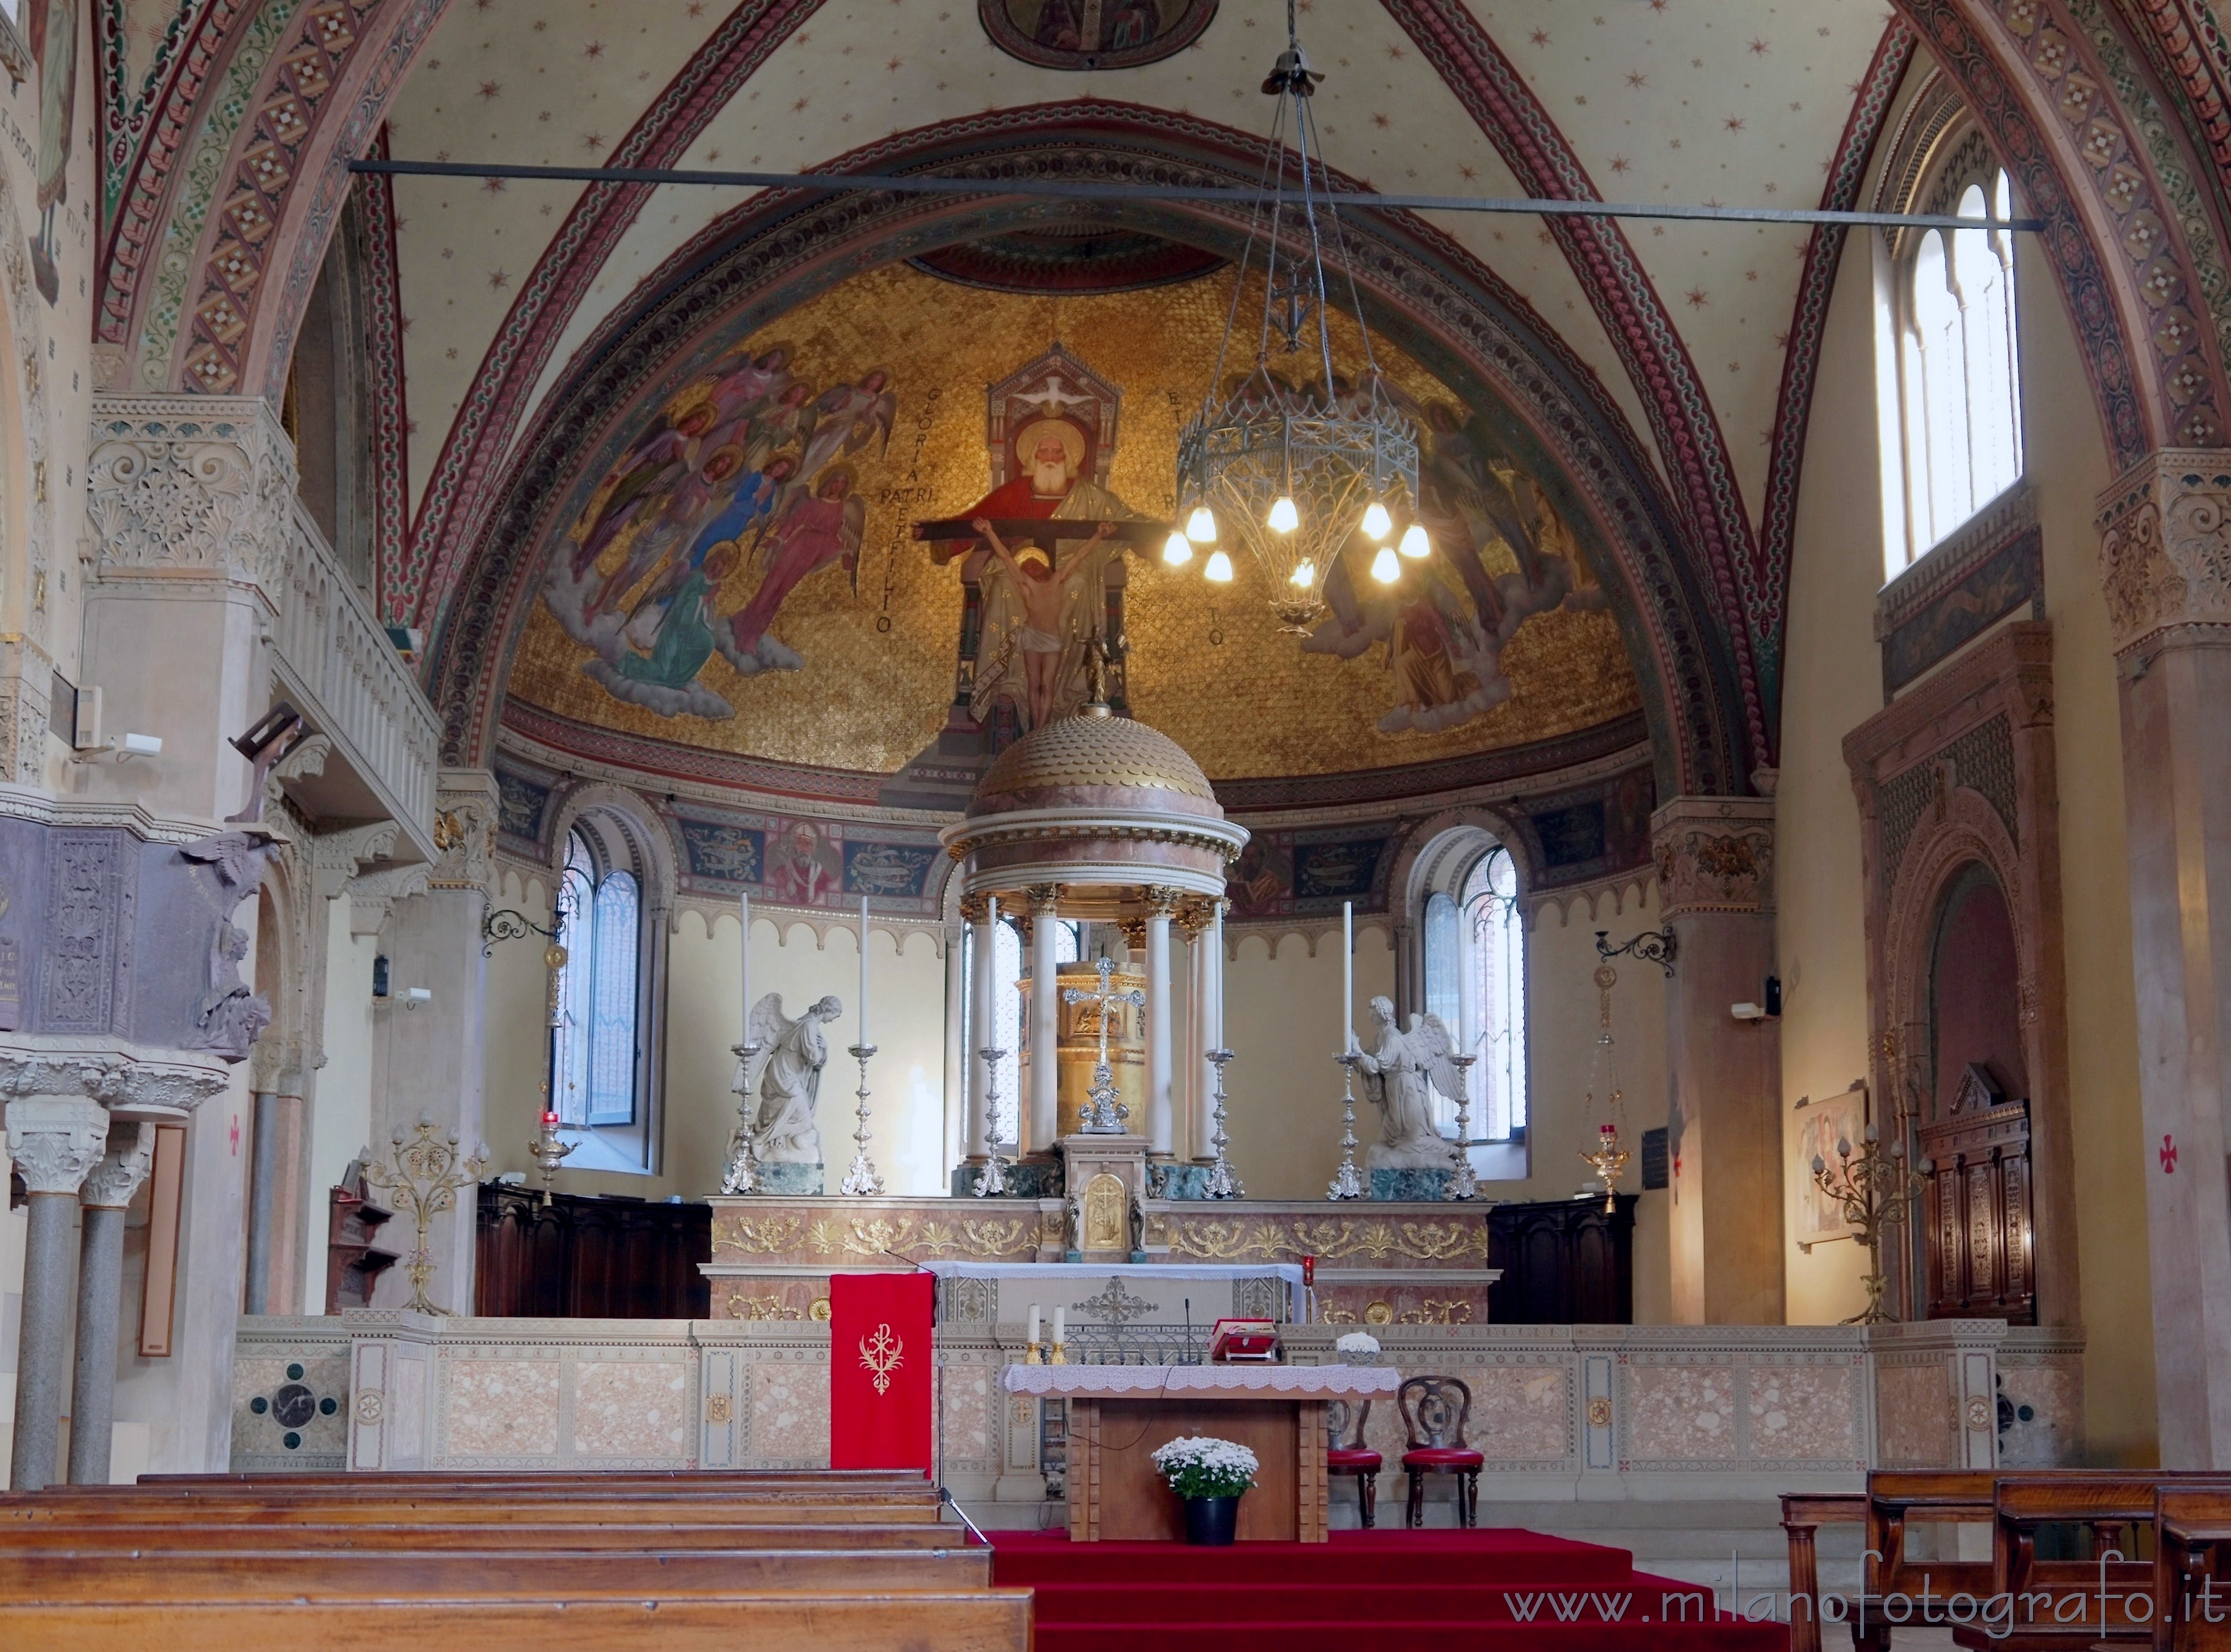 Milano: Altare e abside della Basilica di San Calimero - Milano